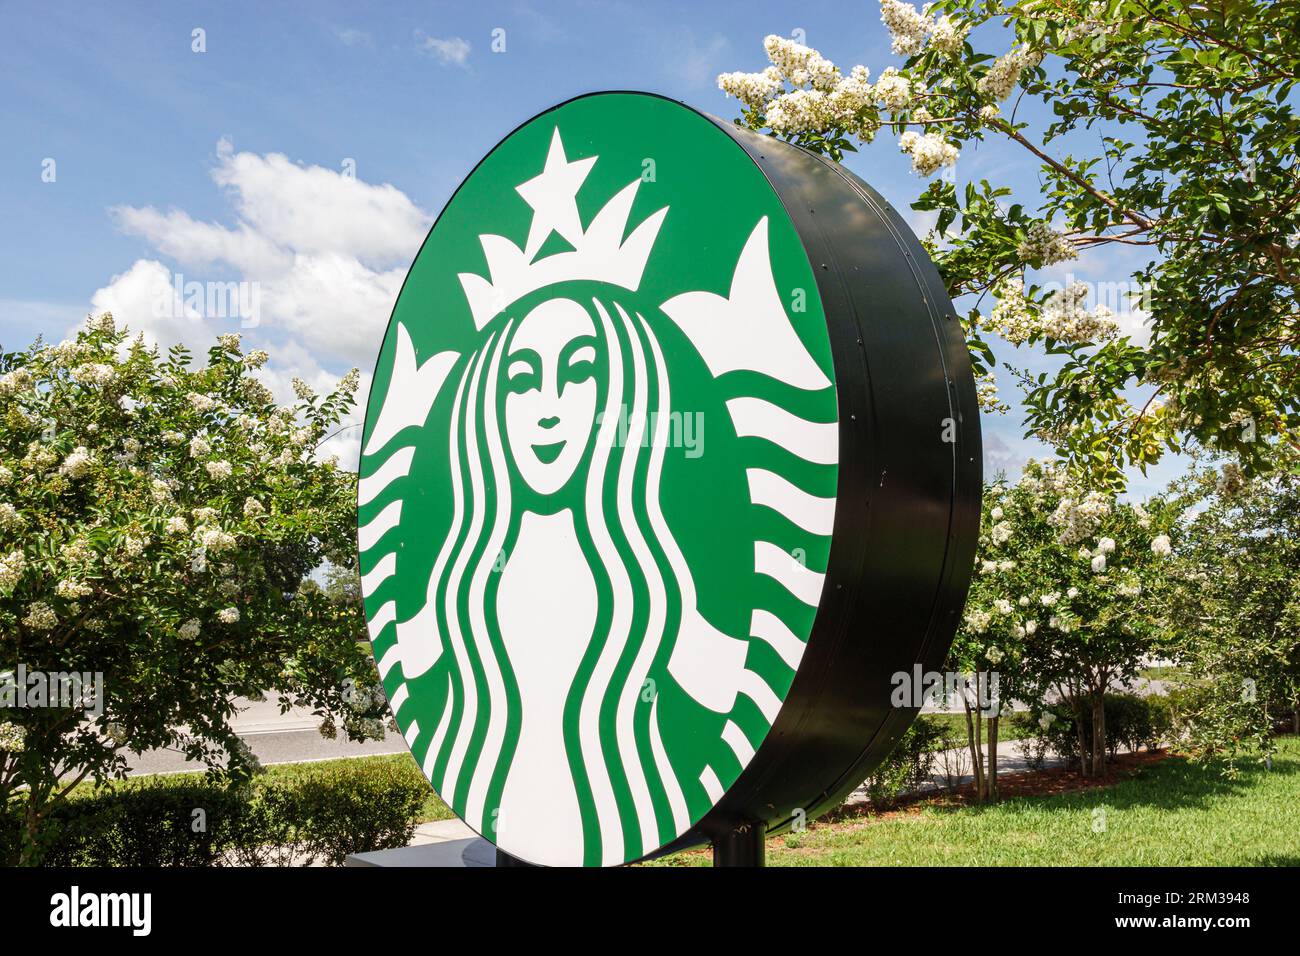 Viera Florida,Starbucks Coffee,giant logo Stock Photo